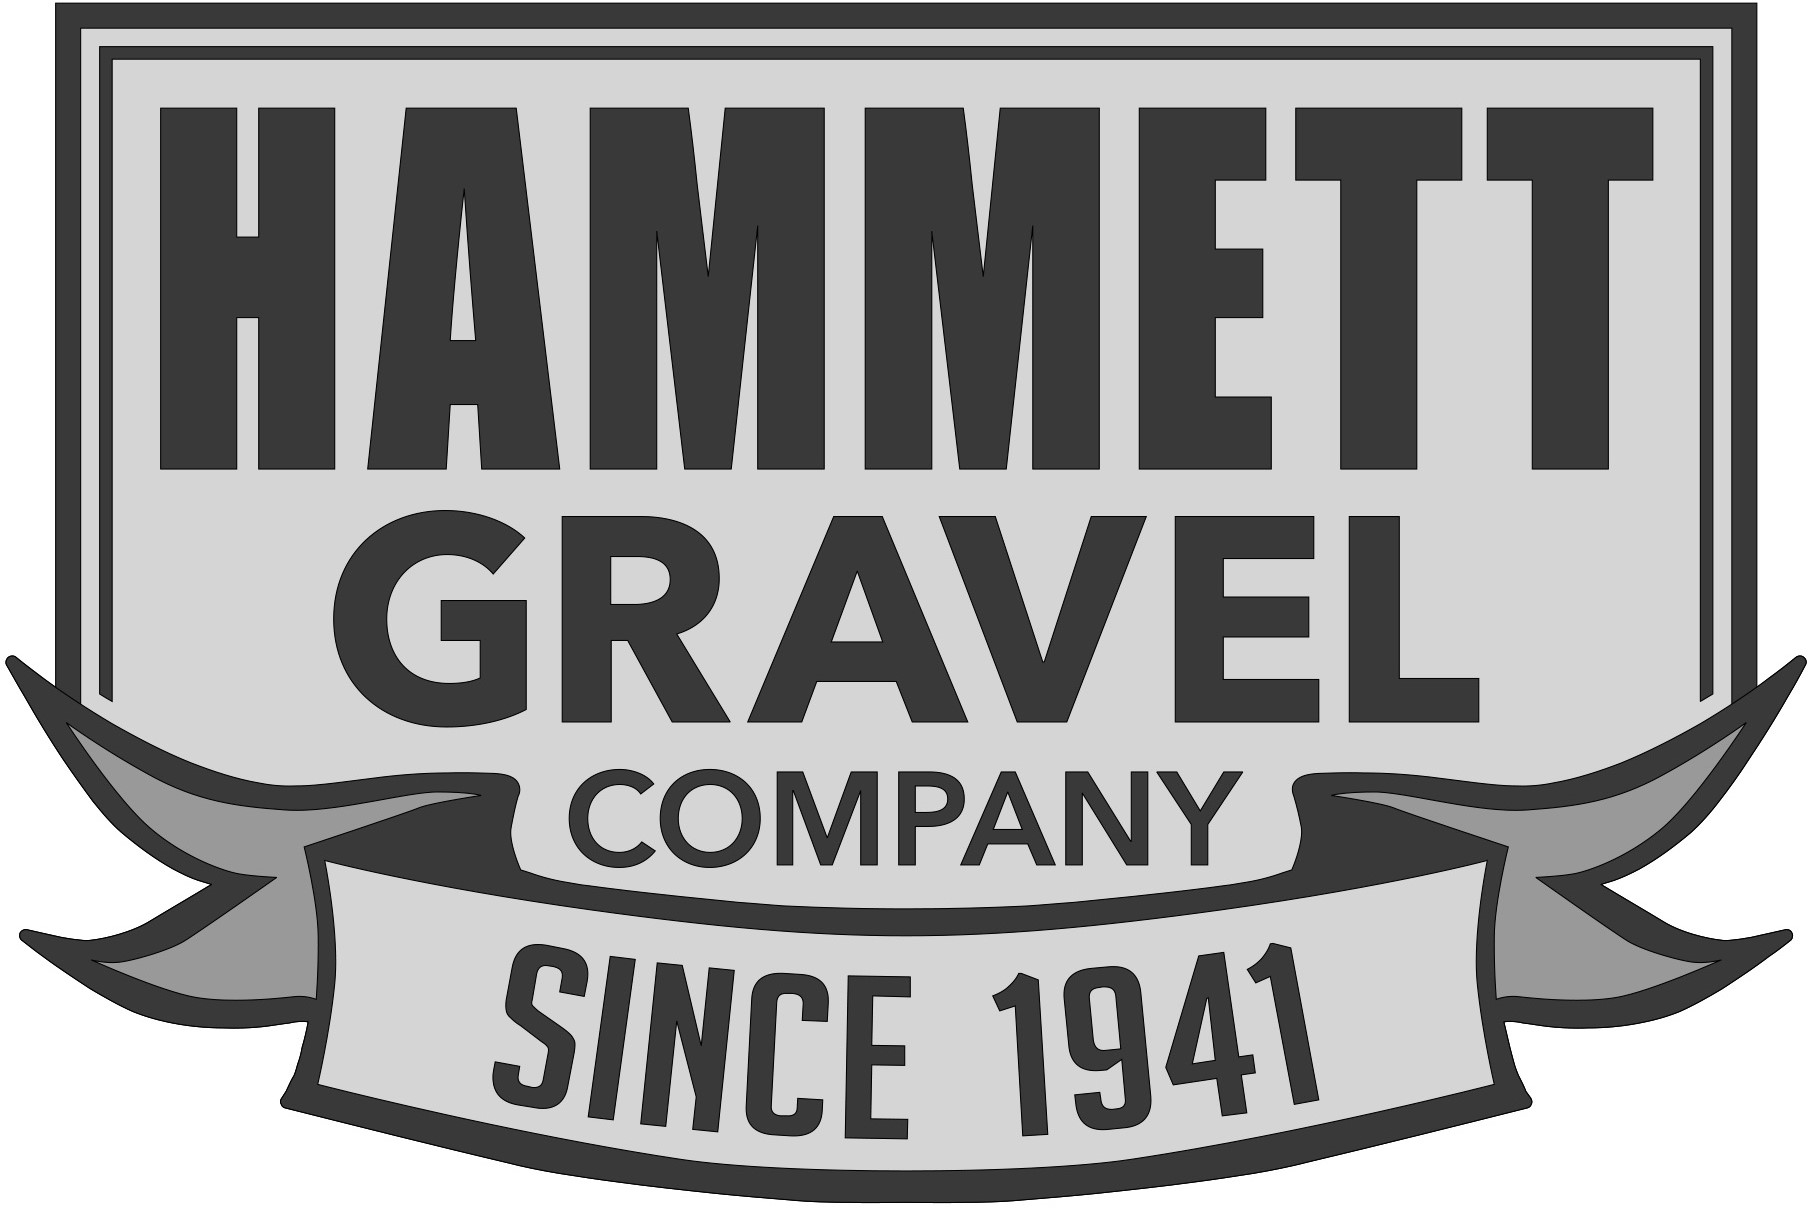 Hammett Gravel Mine Inspection